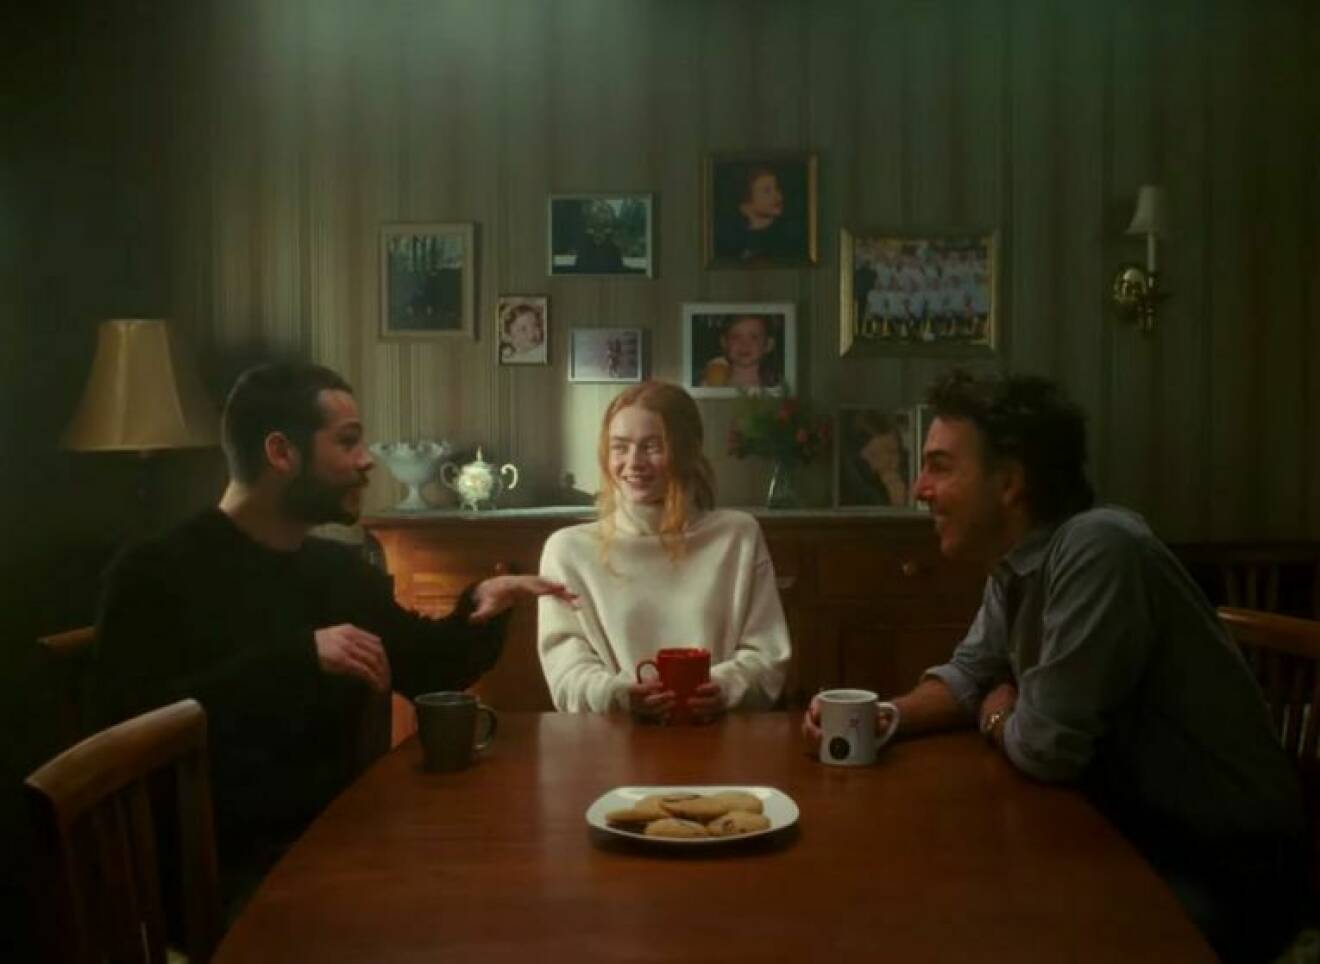 scen ur videon där paret fikar med tjejens pappa